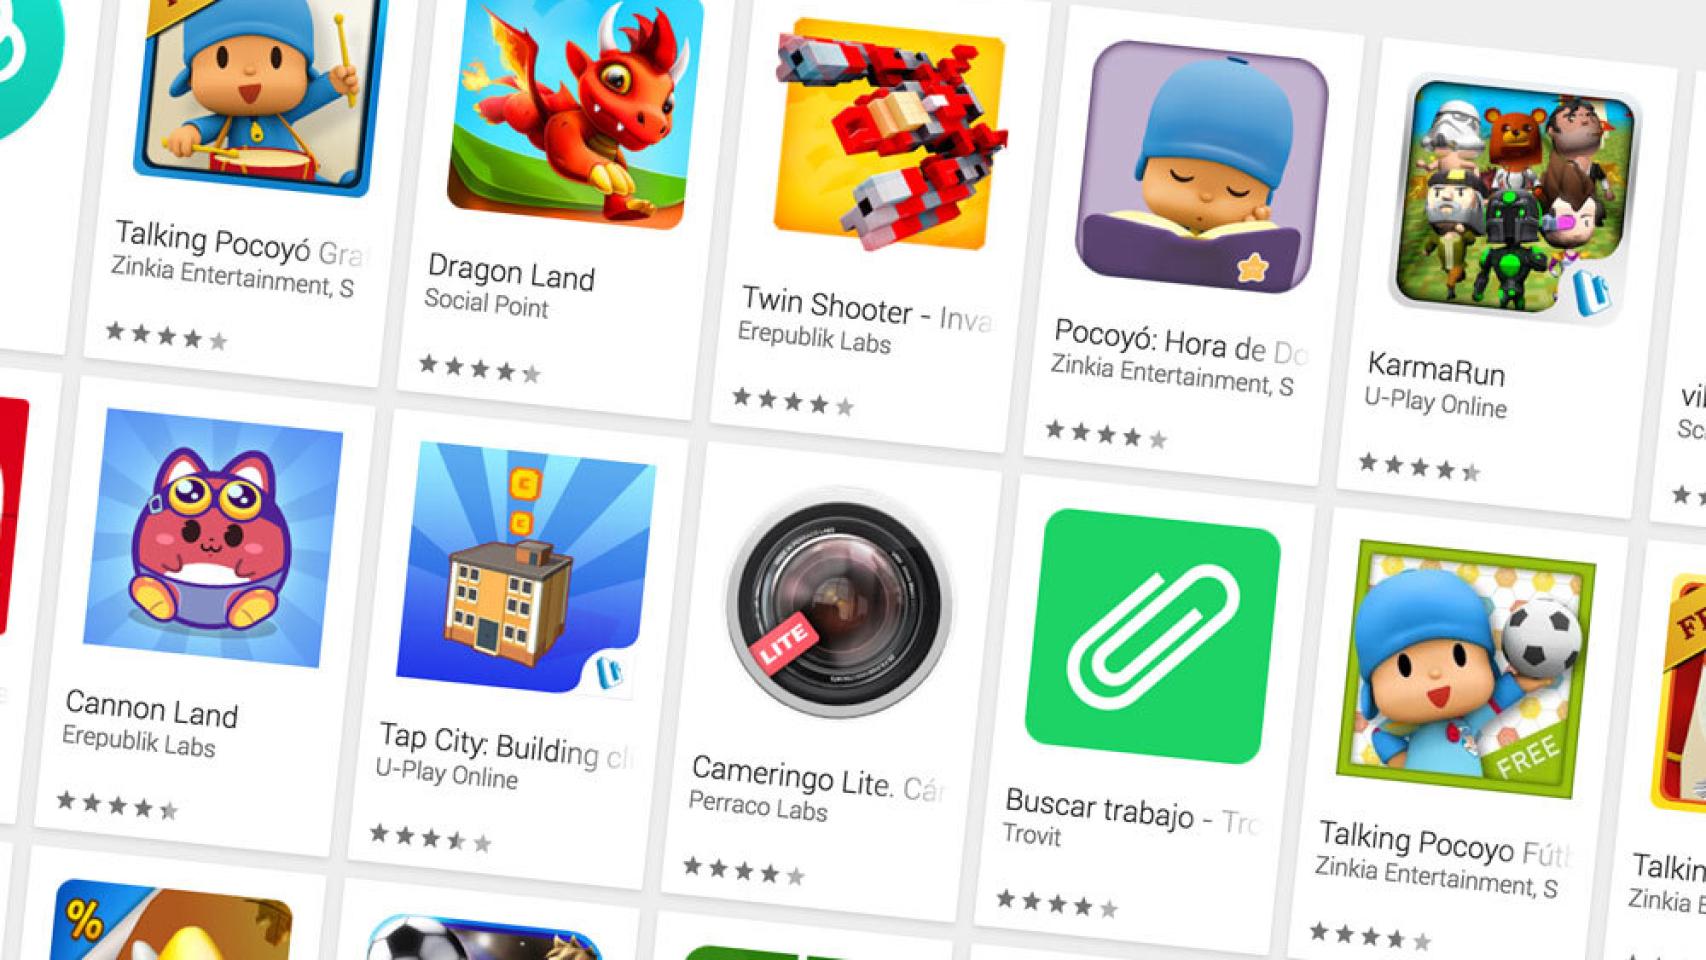 Configuración de Google play al comprar robux - Comunidad de Google Play